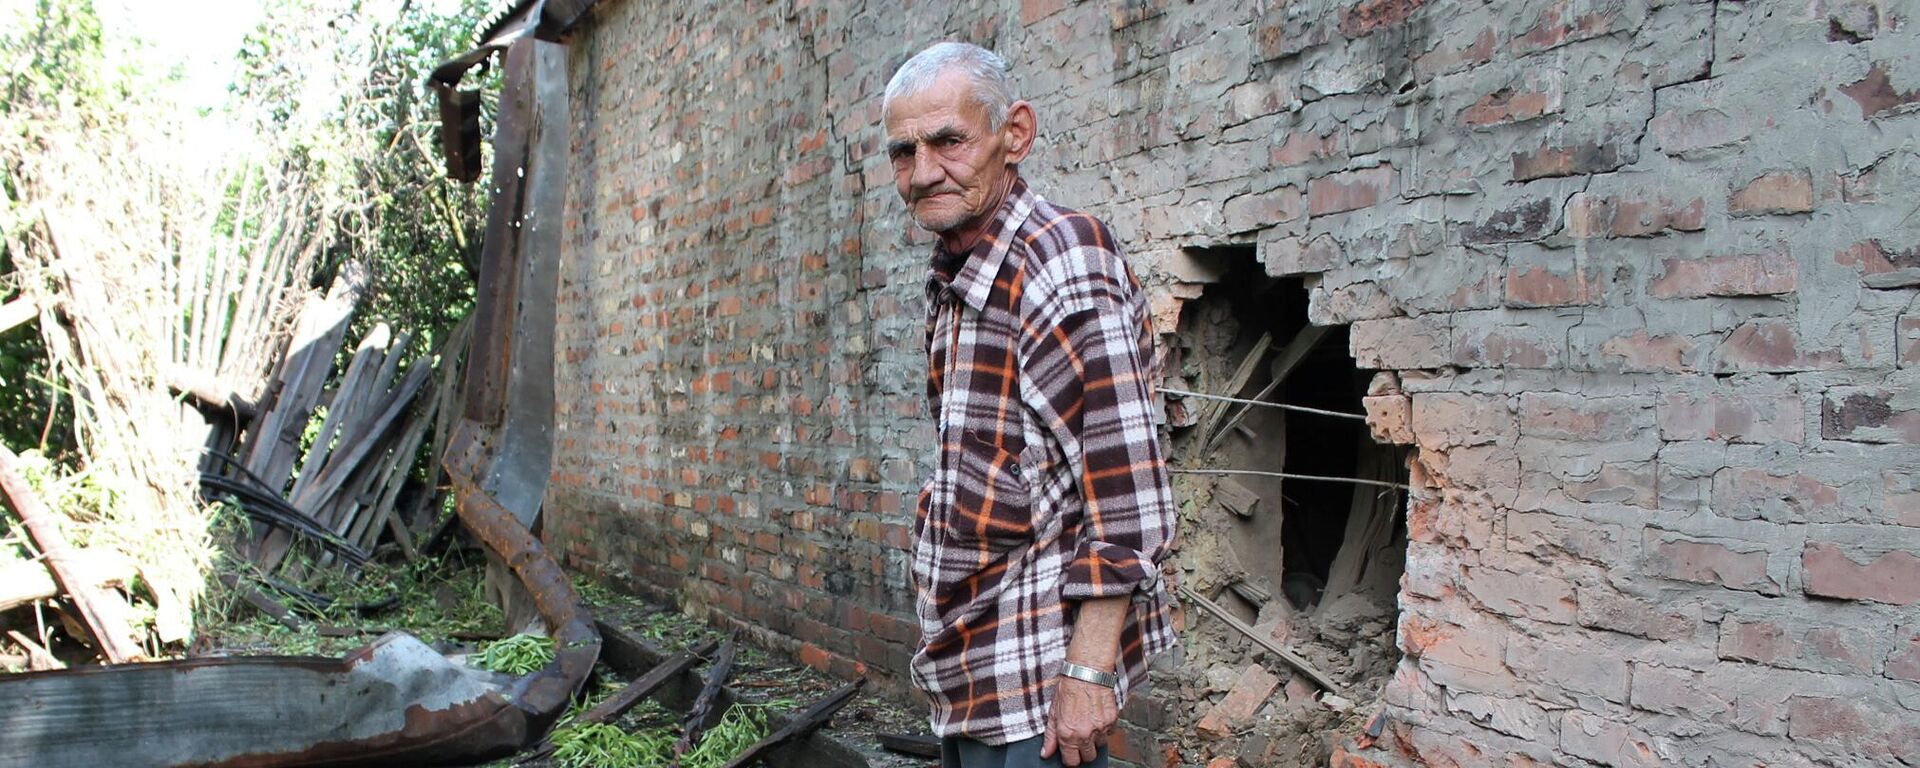 أصابت قذيفة من القوات المسلحة الأوكرانية منزل هذا الرجل المسن. في ذلك اليوم، 15 يوليو 2015، دمر الجيش الأوكراني أربعة منازل خاصة في غورلوفكا بقصف مدفعي. قتلت امرأة، وأصيبت أخرى بجروح خطيرة، مما أدى إلى فقدان ساقها. إطلاق النار على المنازل مع المدنيين - كبار السن والأطفال والنساء - كل هذا لم تُعتبر جريمة حرب من قبل القوات المسلحة الأوكرانية. لقد فقد الآلاف من الناس حياتهم وأحبائهم وصحتهم وسقوفهم فوق رؤوسهم في ثماني سنوات. - سبوتنيك عربي, 1920, 02.08.2022